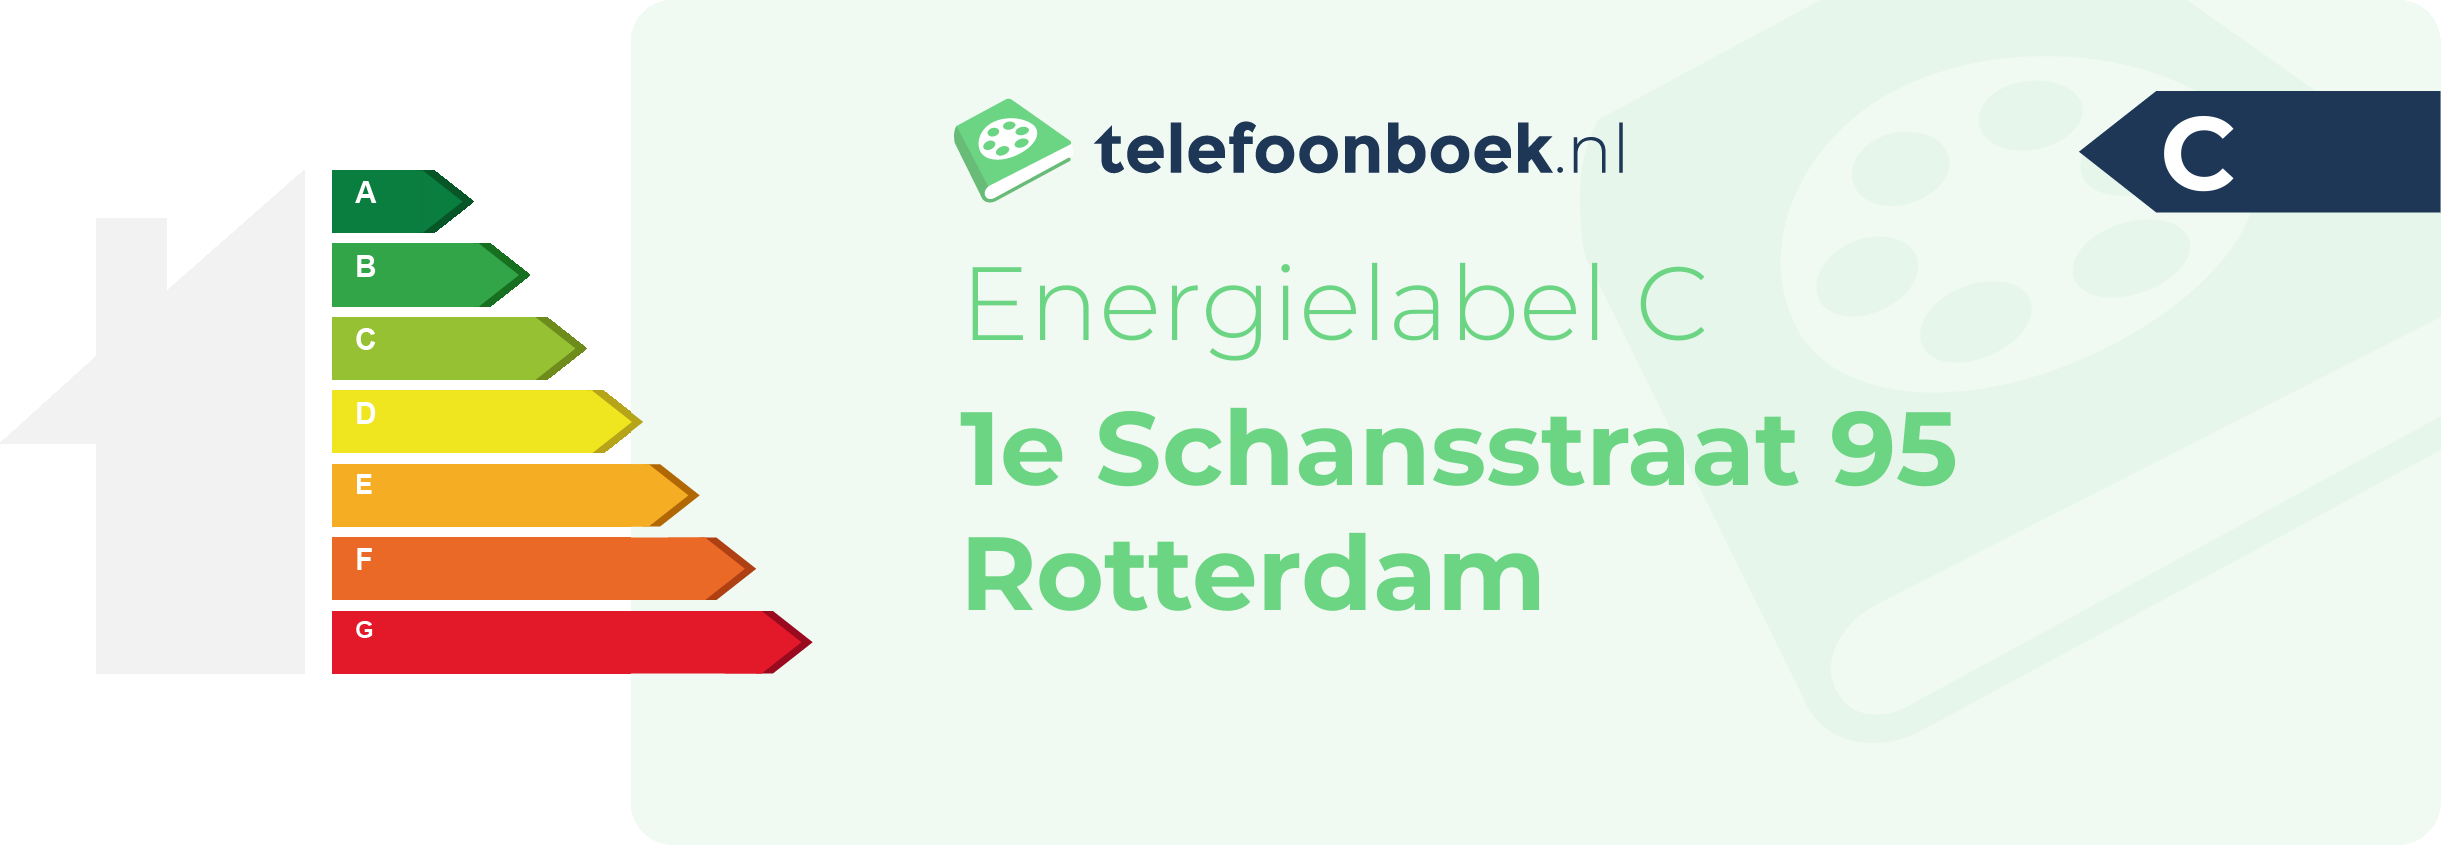 Energielabel 1e Schansstraat 95 Rotterdam